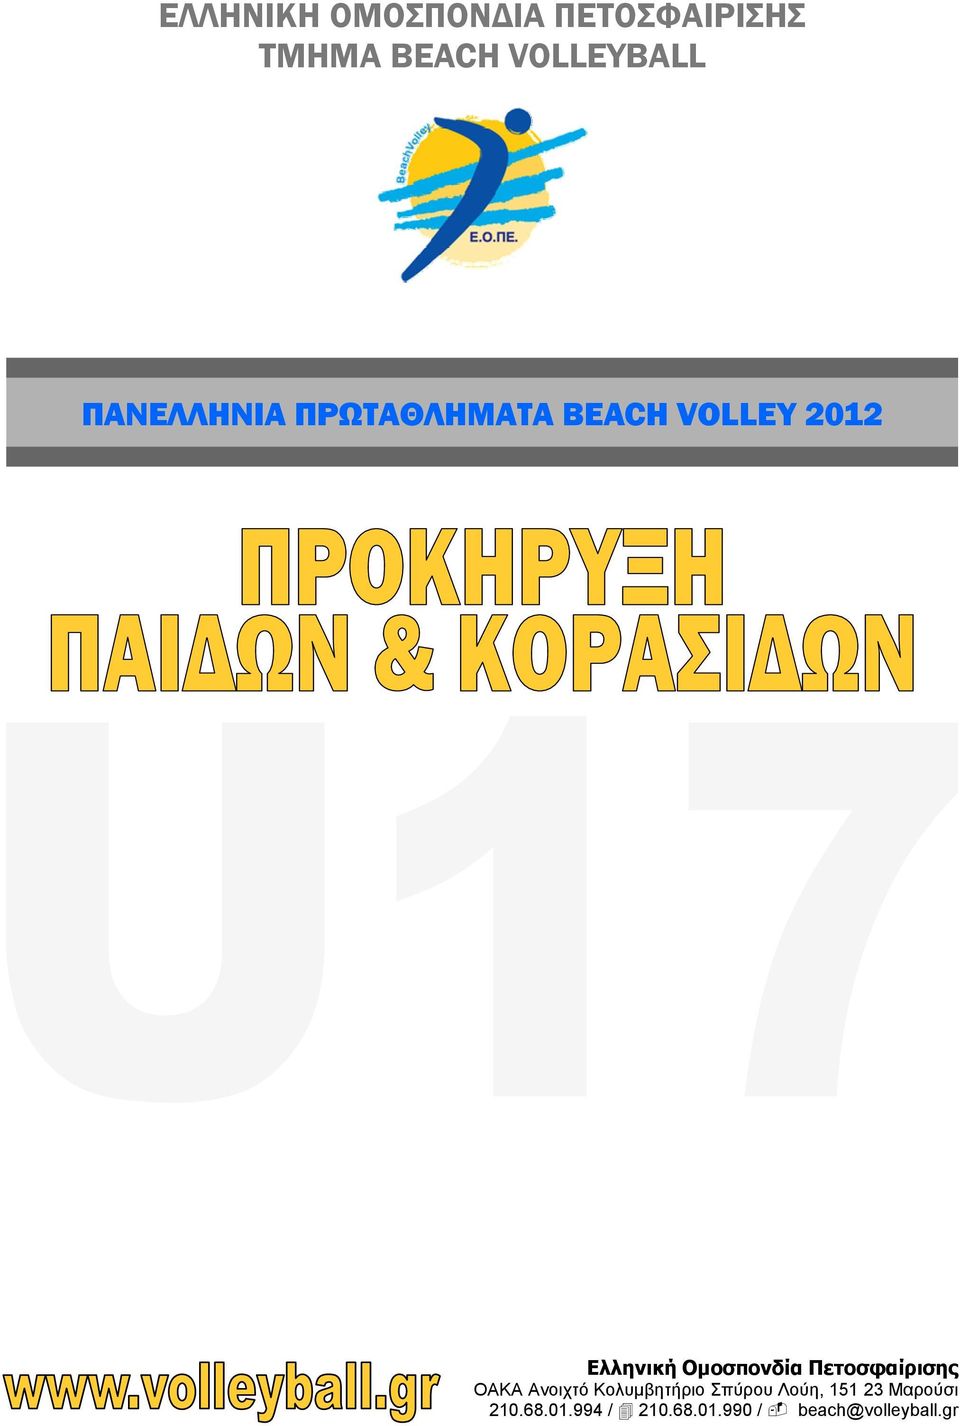 Ομοσπονδία Πετοσφαίρισης OAKA Ανοιχτό Κολυμβητήριο Σπύρου